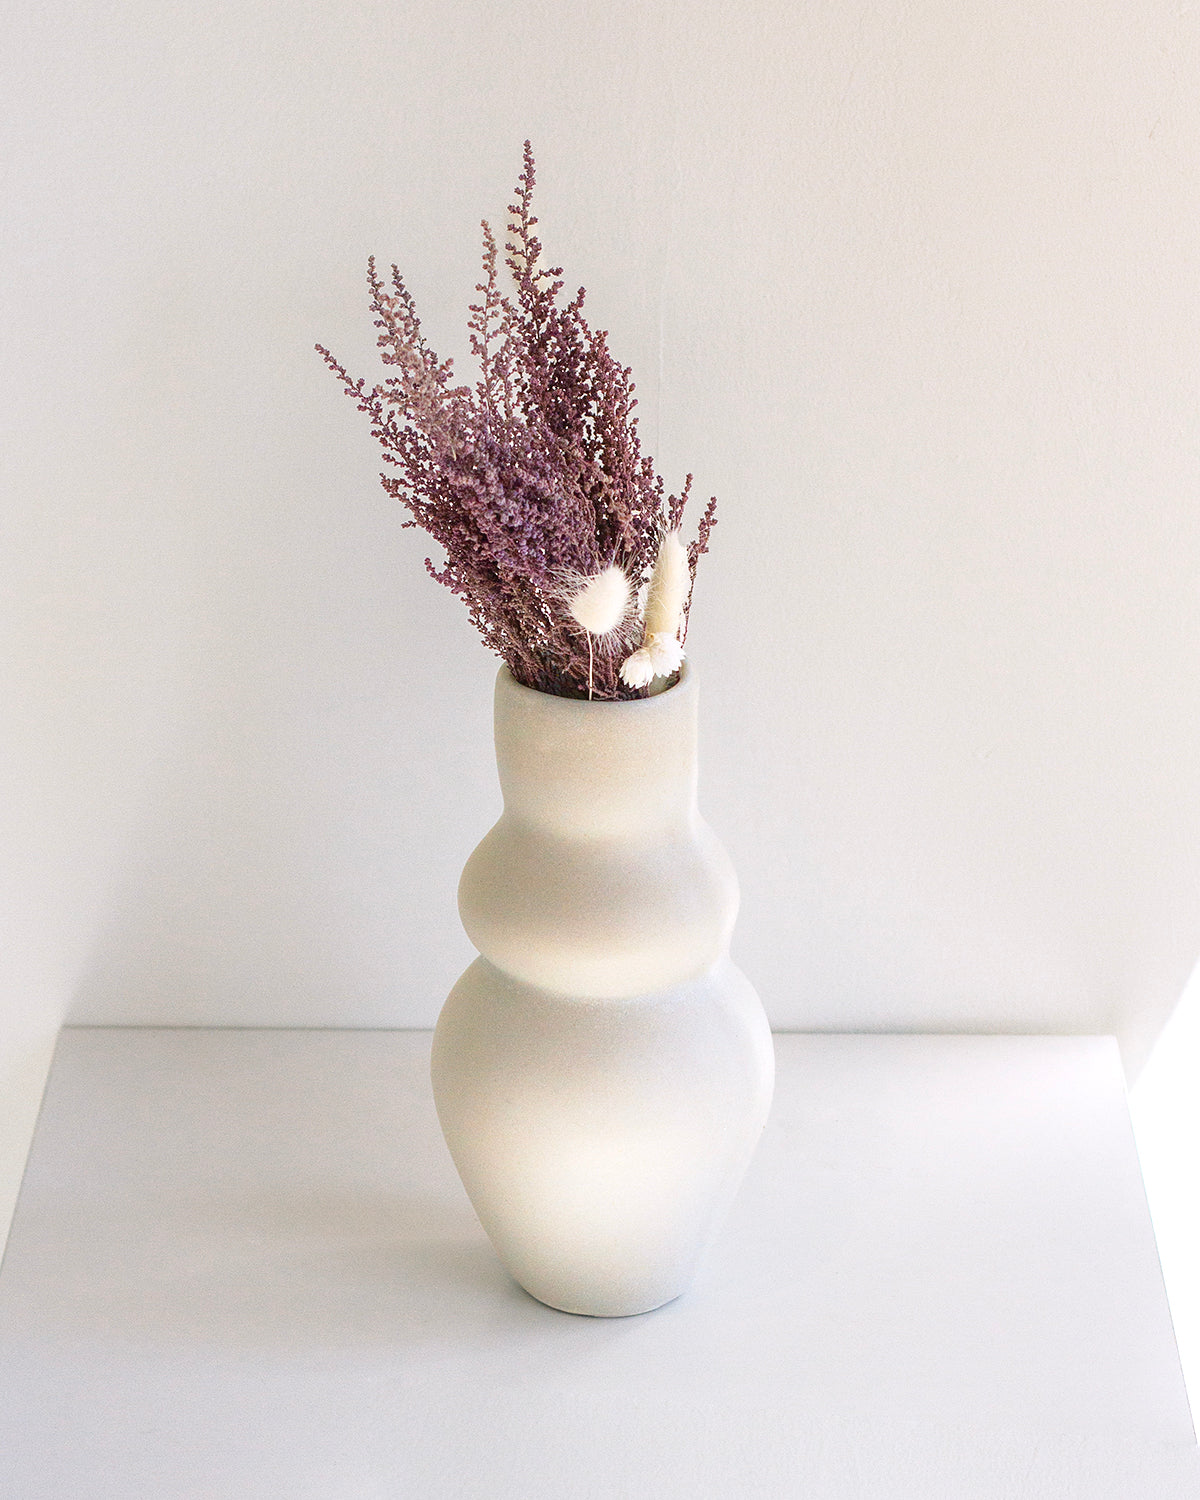 Goddess Clay Vase - Bone White